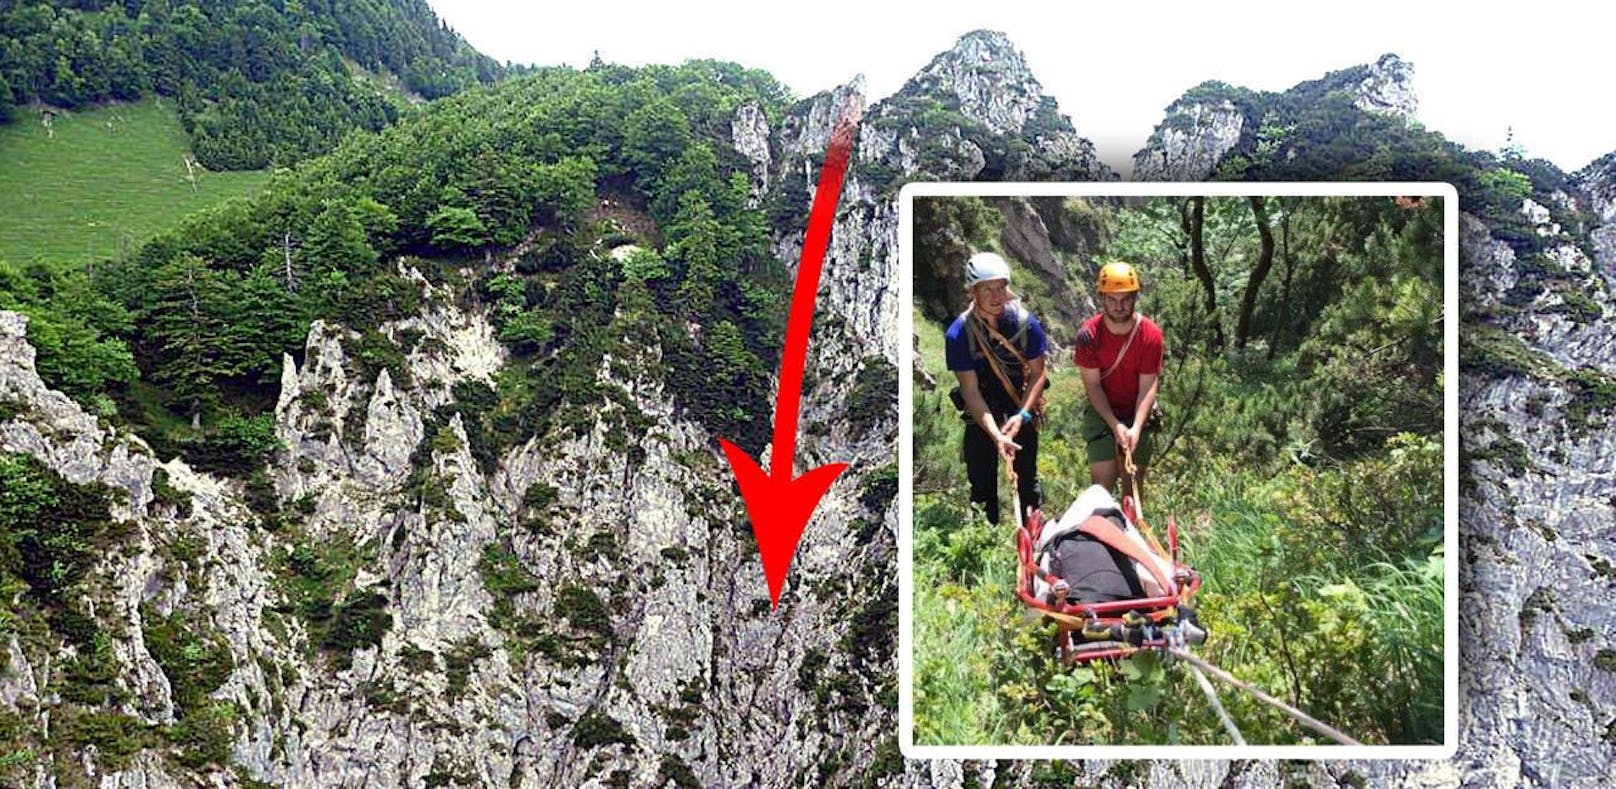 Bergsteiger stürzte vor Freunden 150 Meter in Tod